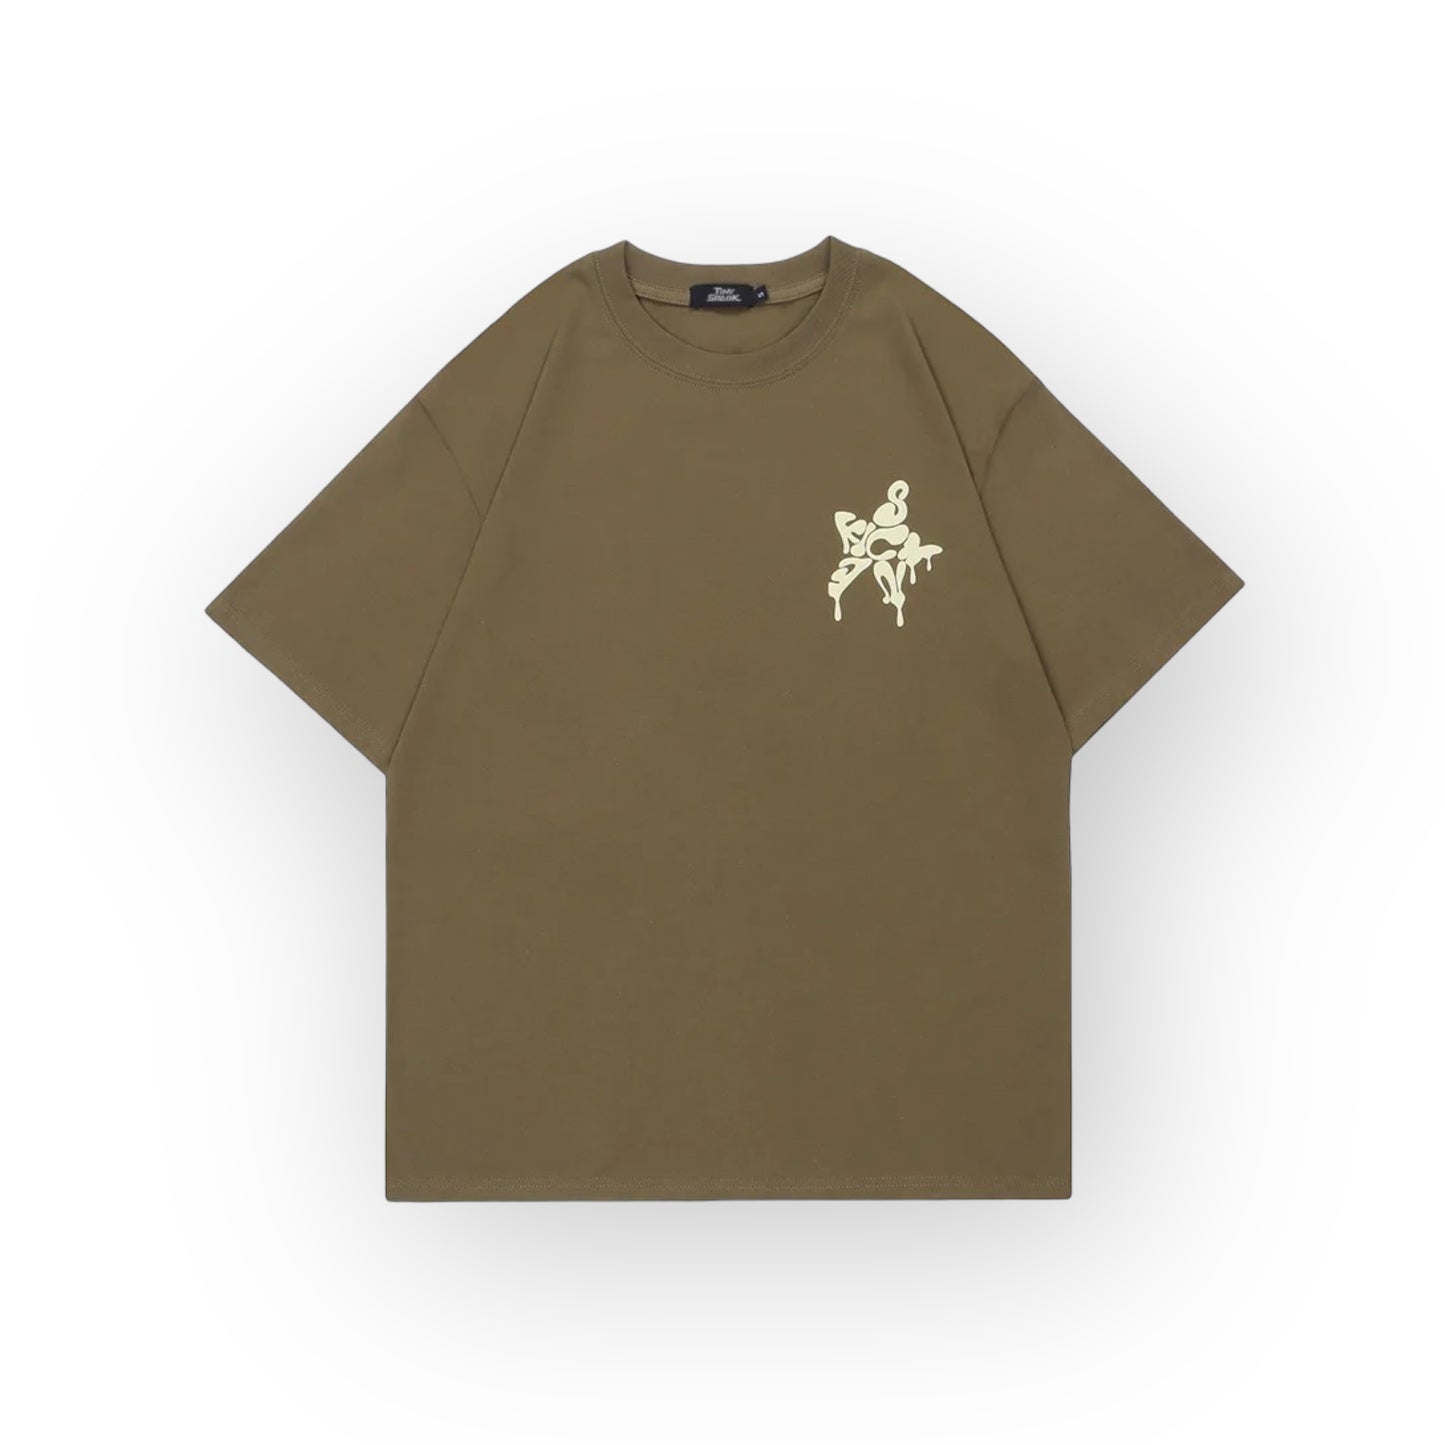 Tiny Spark Melting Letter Star Graphic T-Shirt